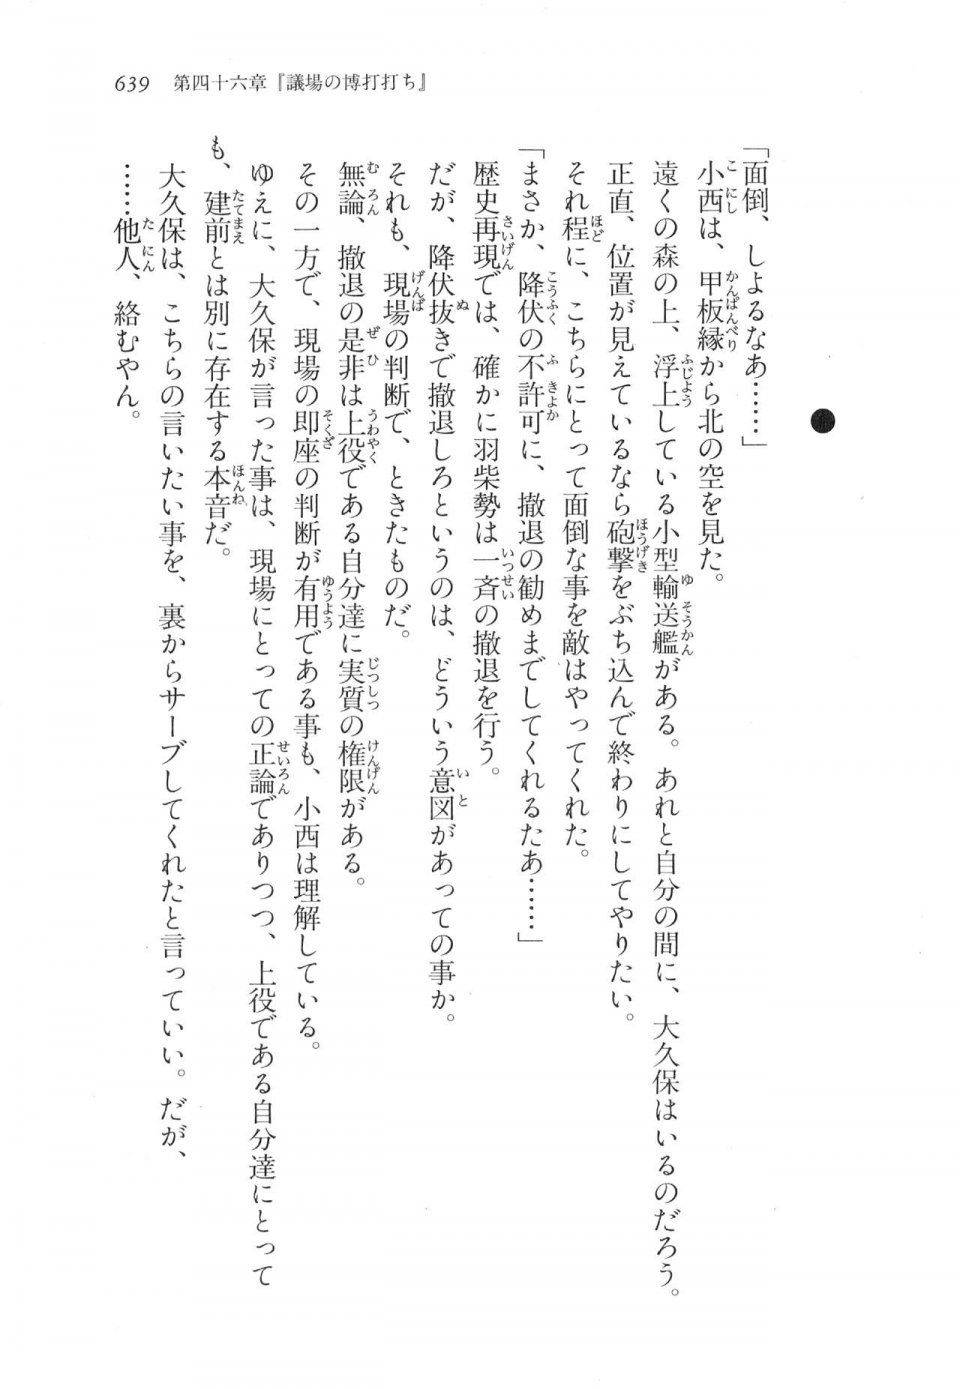 Kyoukai Senjou no Horizon LN Vol 17(7B) - Photo #641